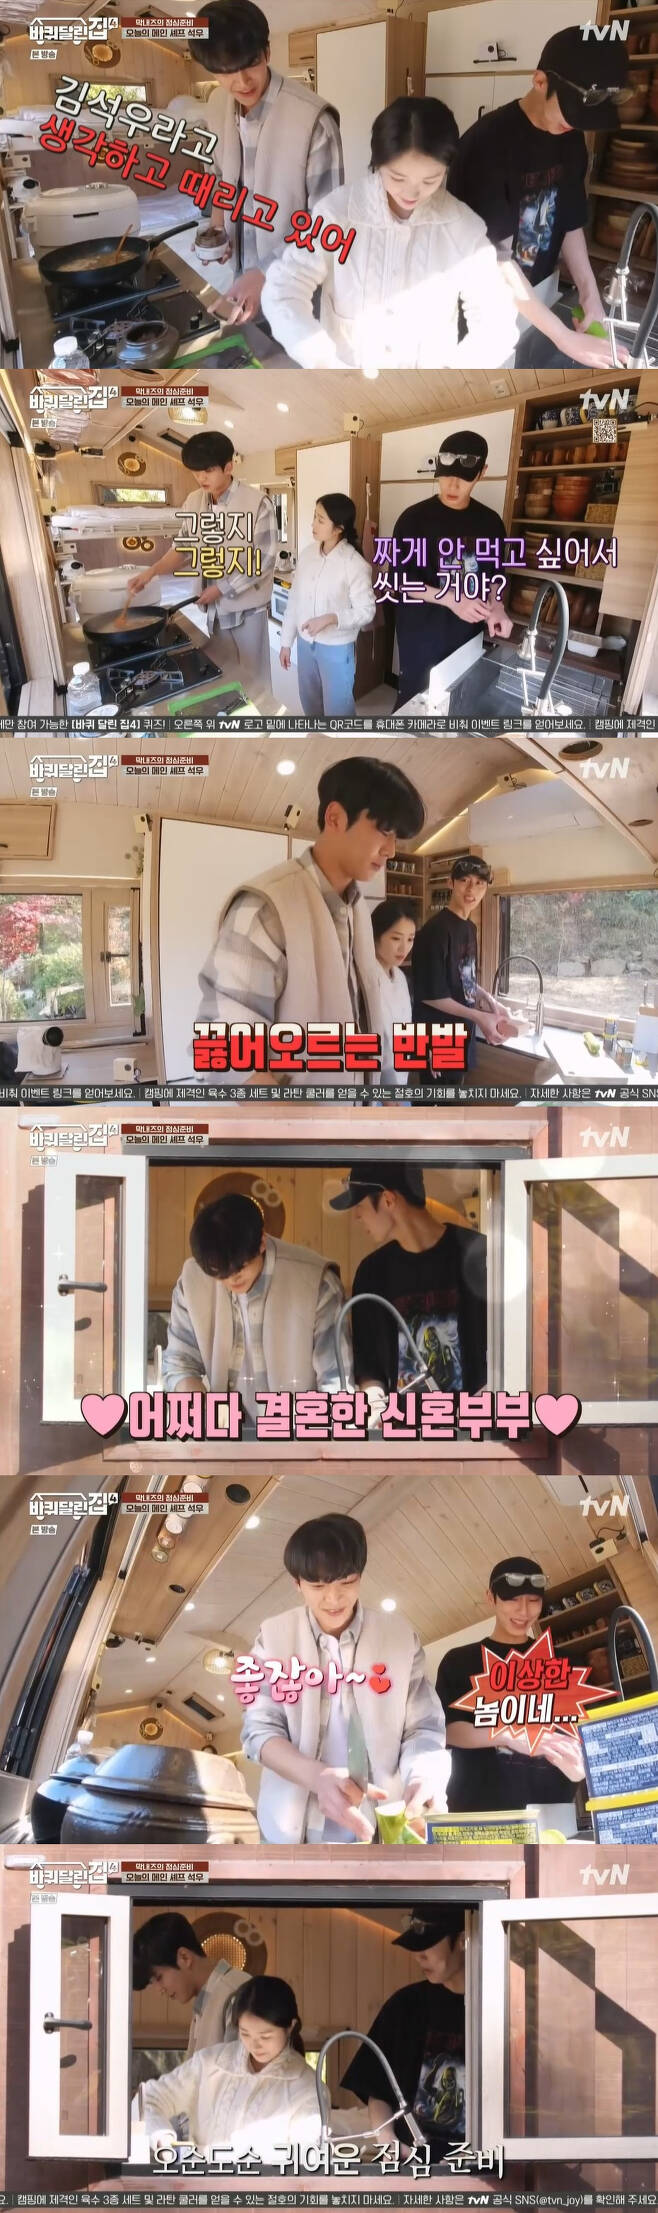 /사진=tvN 예능 프로그램 ‘바퀴 달린 집4’ 방송화면